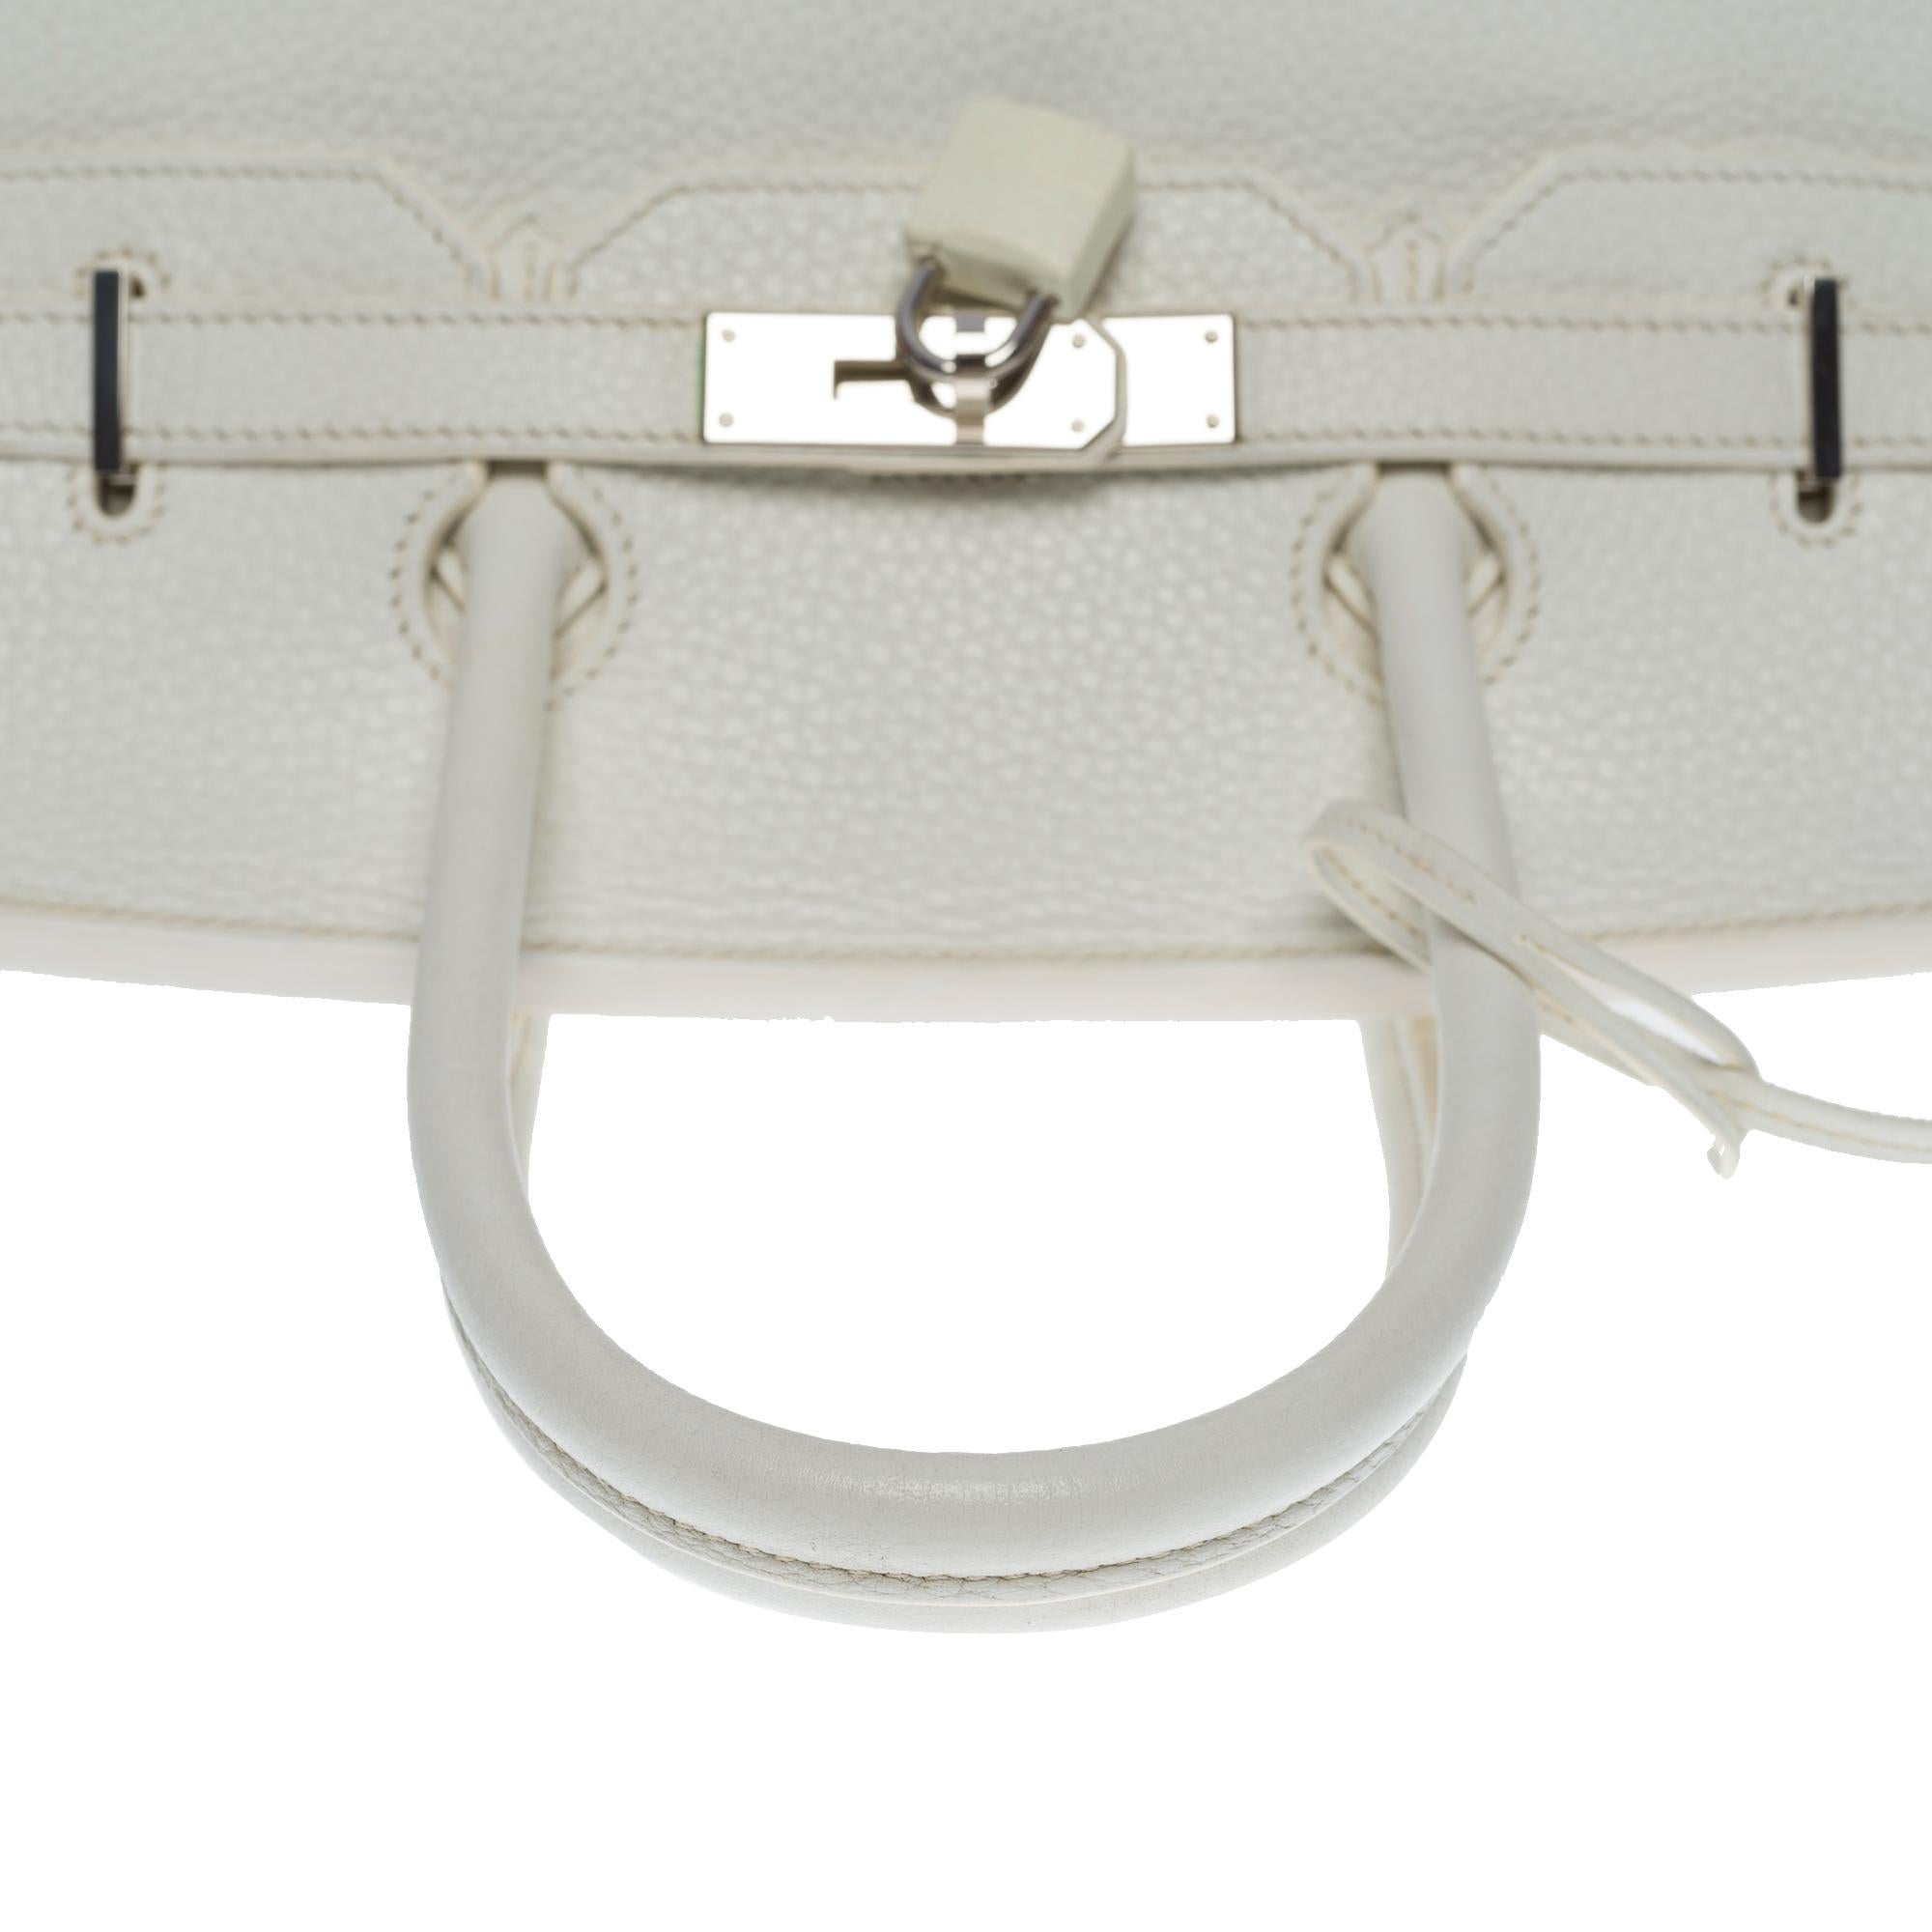 Stunning Hermès Birkin 35 handbag in white Togo leather, SHW 3